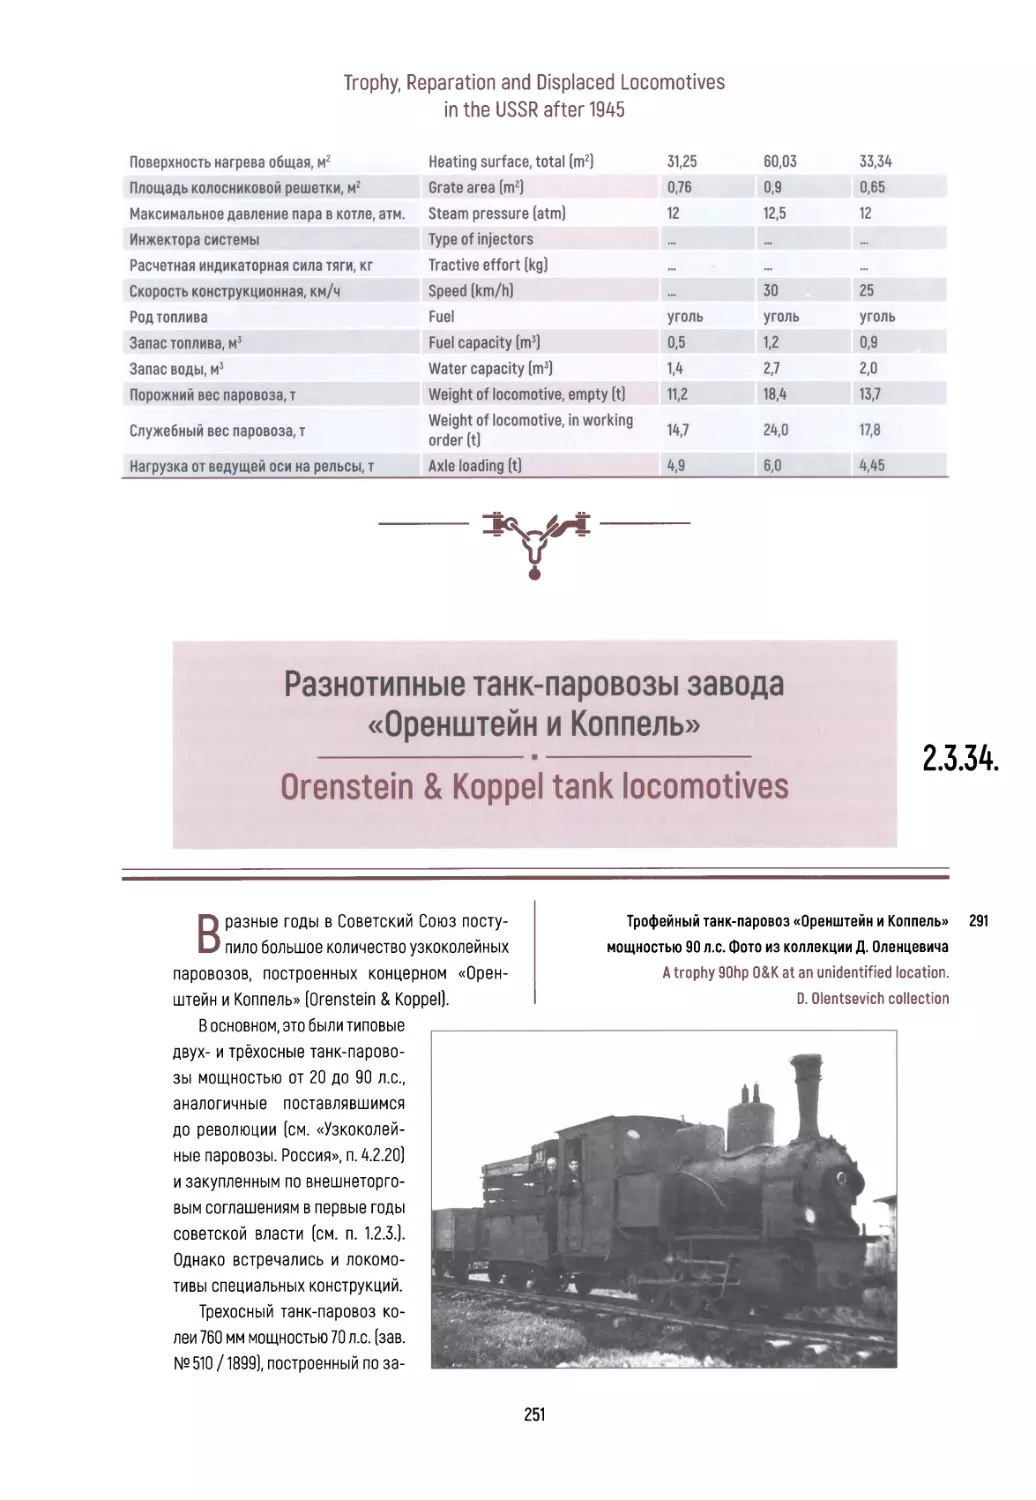 2.3.34. Разнотипные танк-паровозы завода «Оренштейн и Коппель»